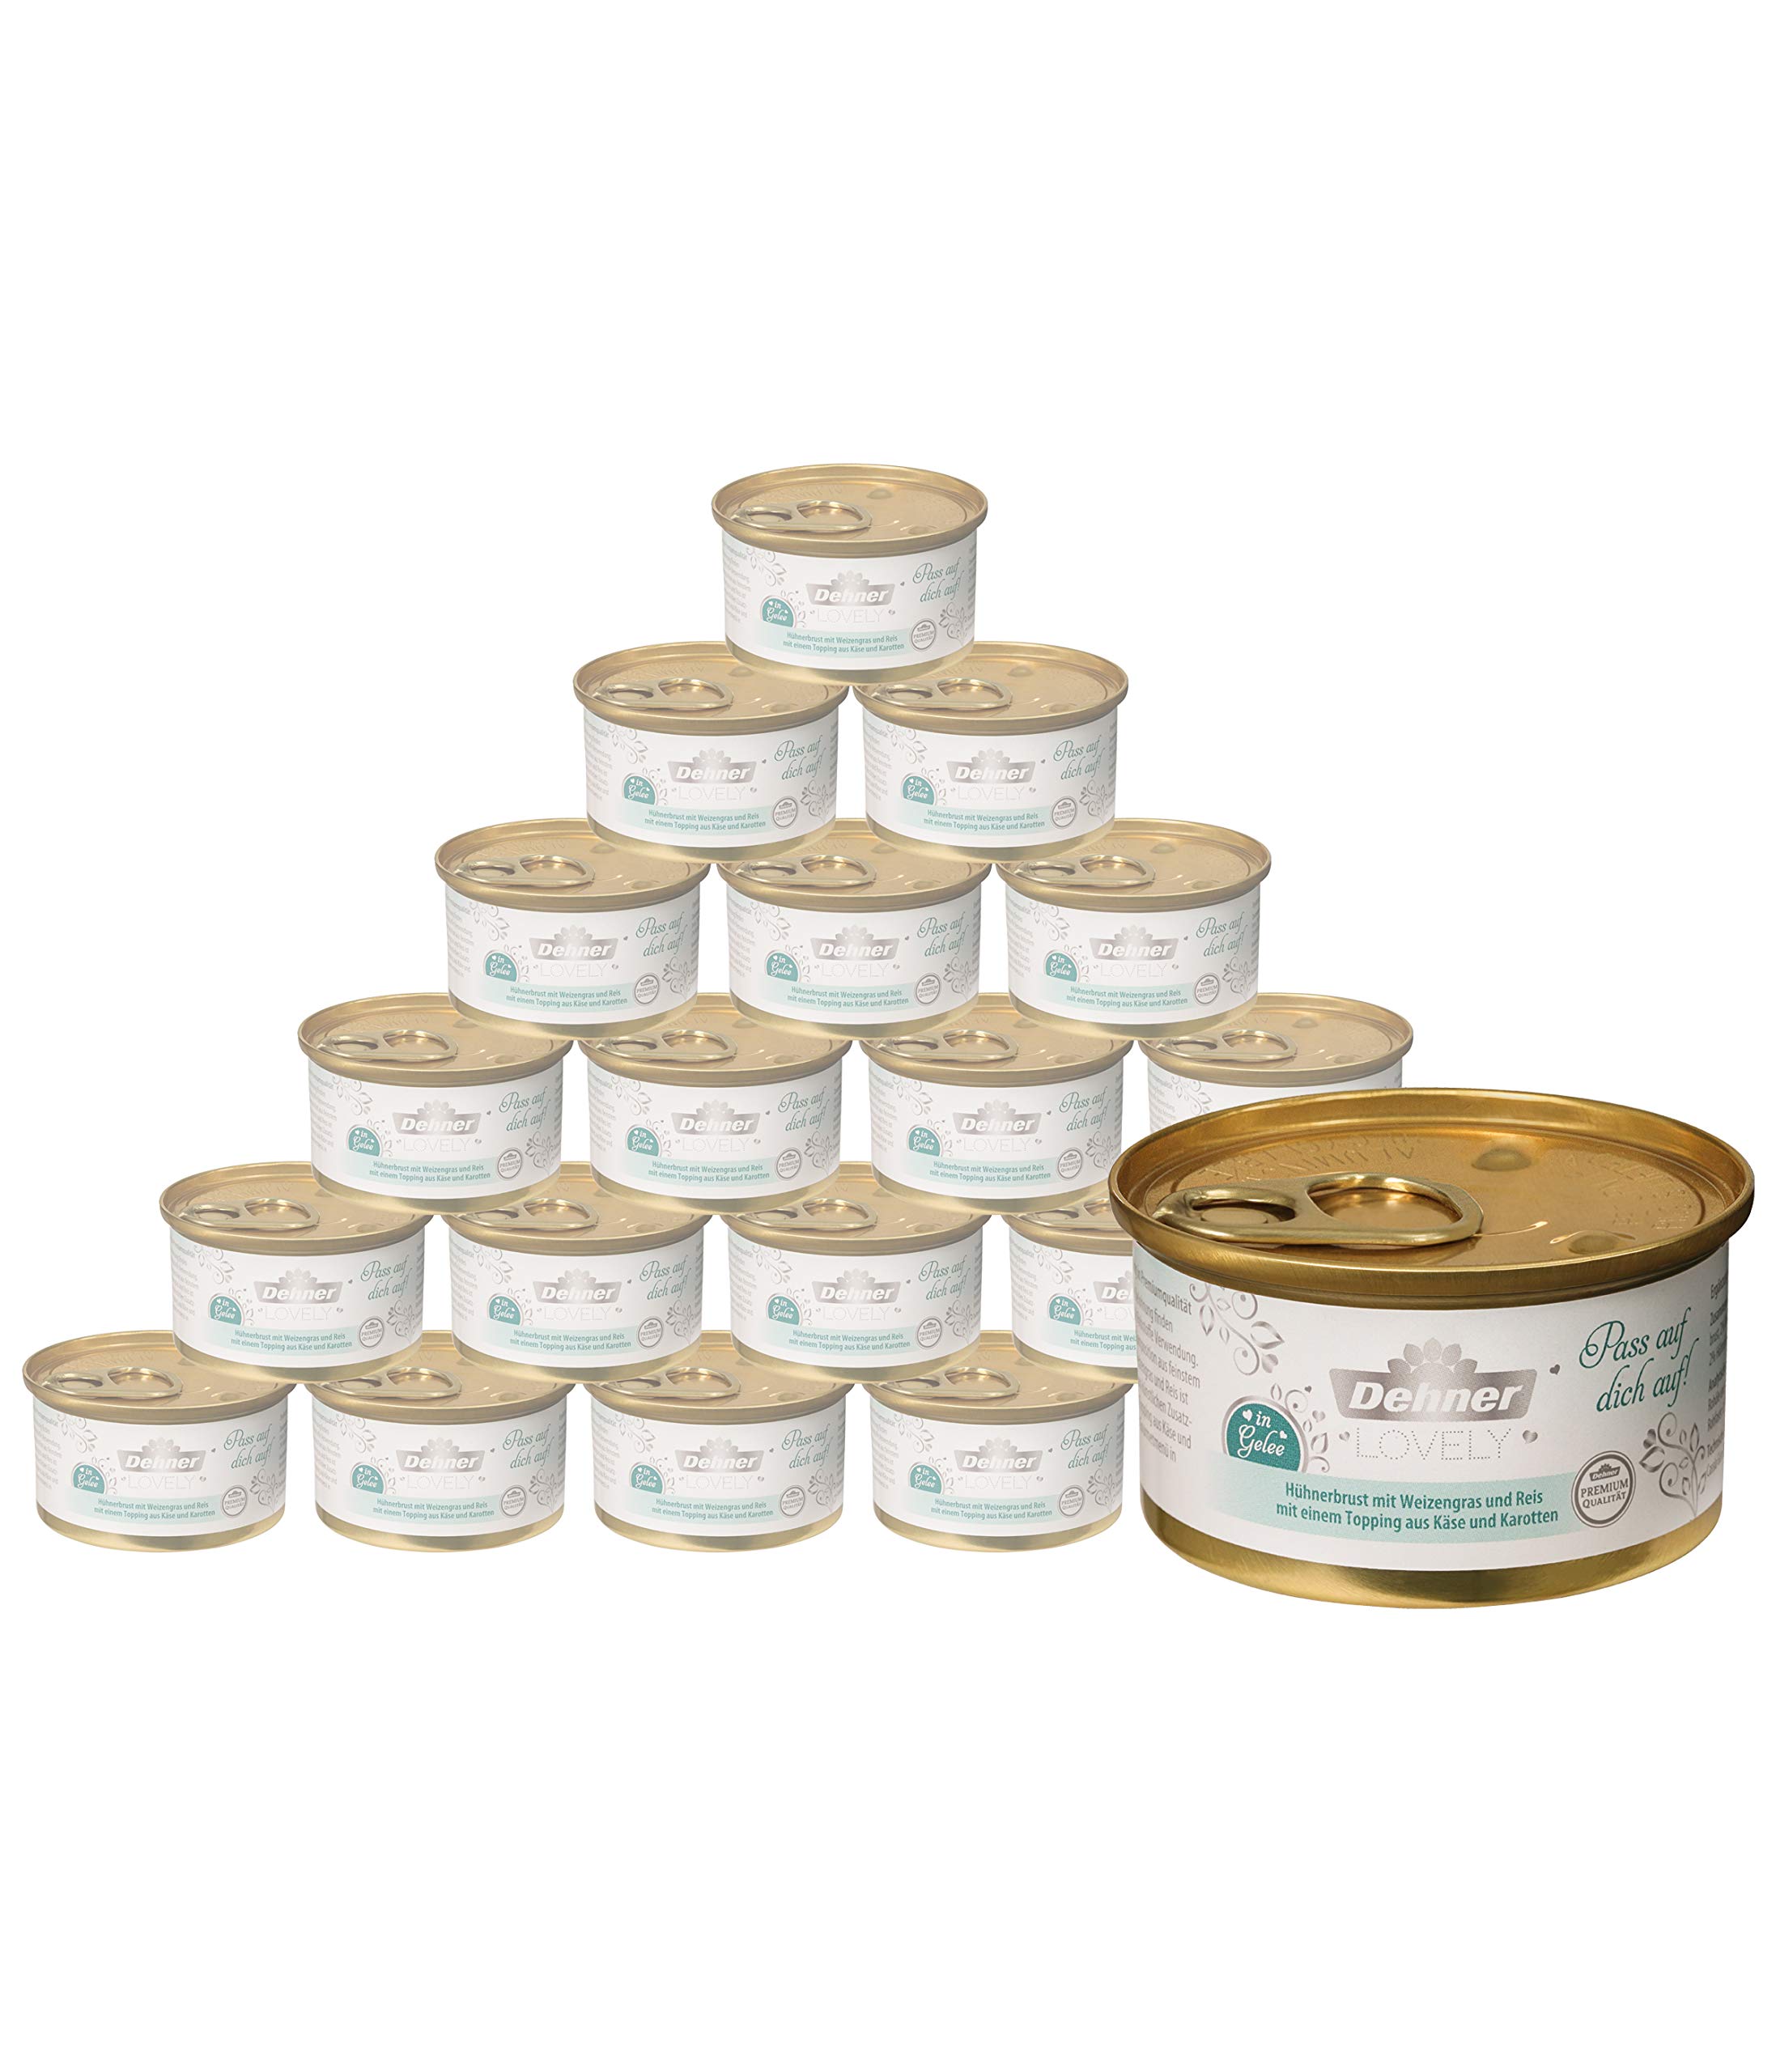 Dehner Premium Lovely Katzenfutter, Nassfutter in Gelee / glutenfrei, für ausgewachsene Katzen, Hühnerbrust / Weizengras / Karotte, 24 x 85 g Dose (2.04 kg)